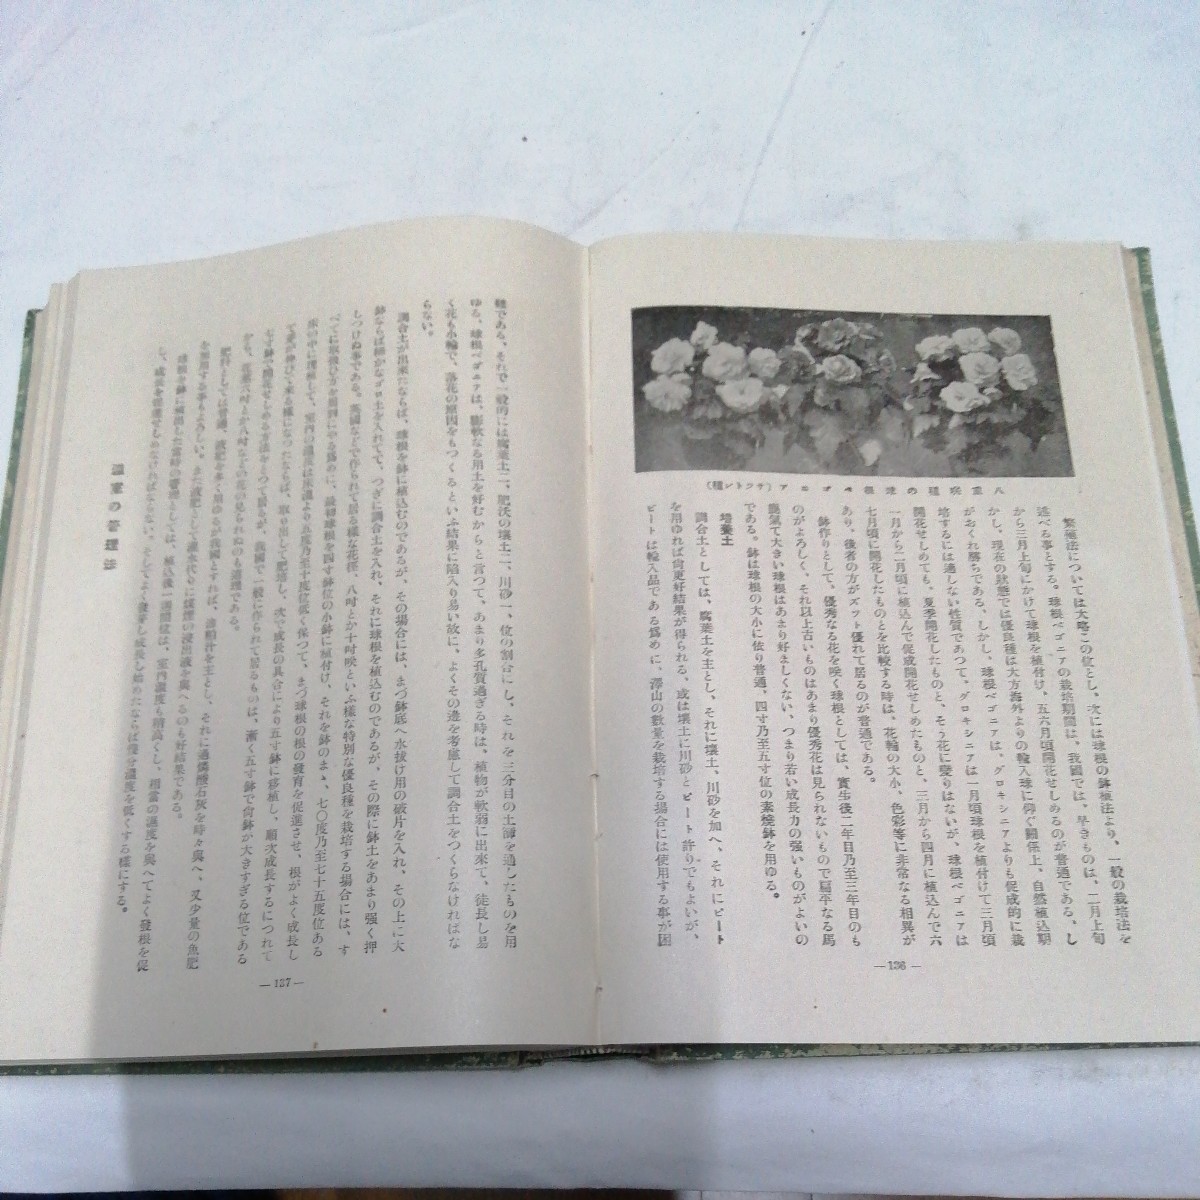  Showa 8 год обобщенный садоводство большой серия итого 4 шт. Ishii ..* Ogawa . сосна бонсай теплица растения . корень античный литература 